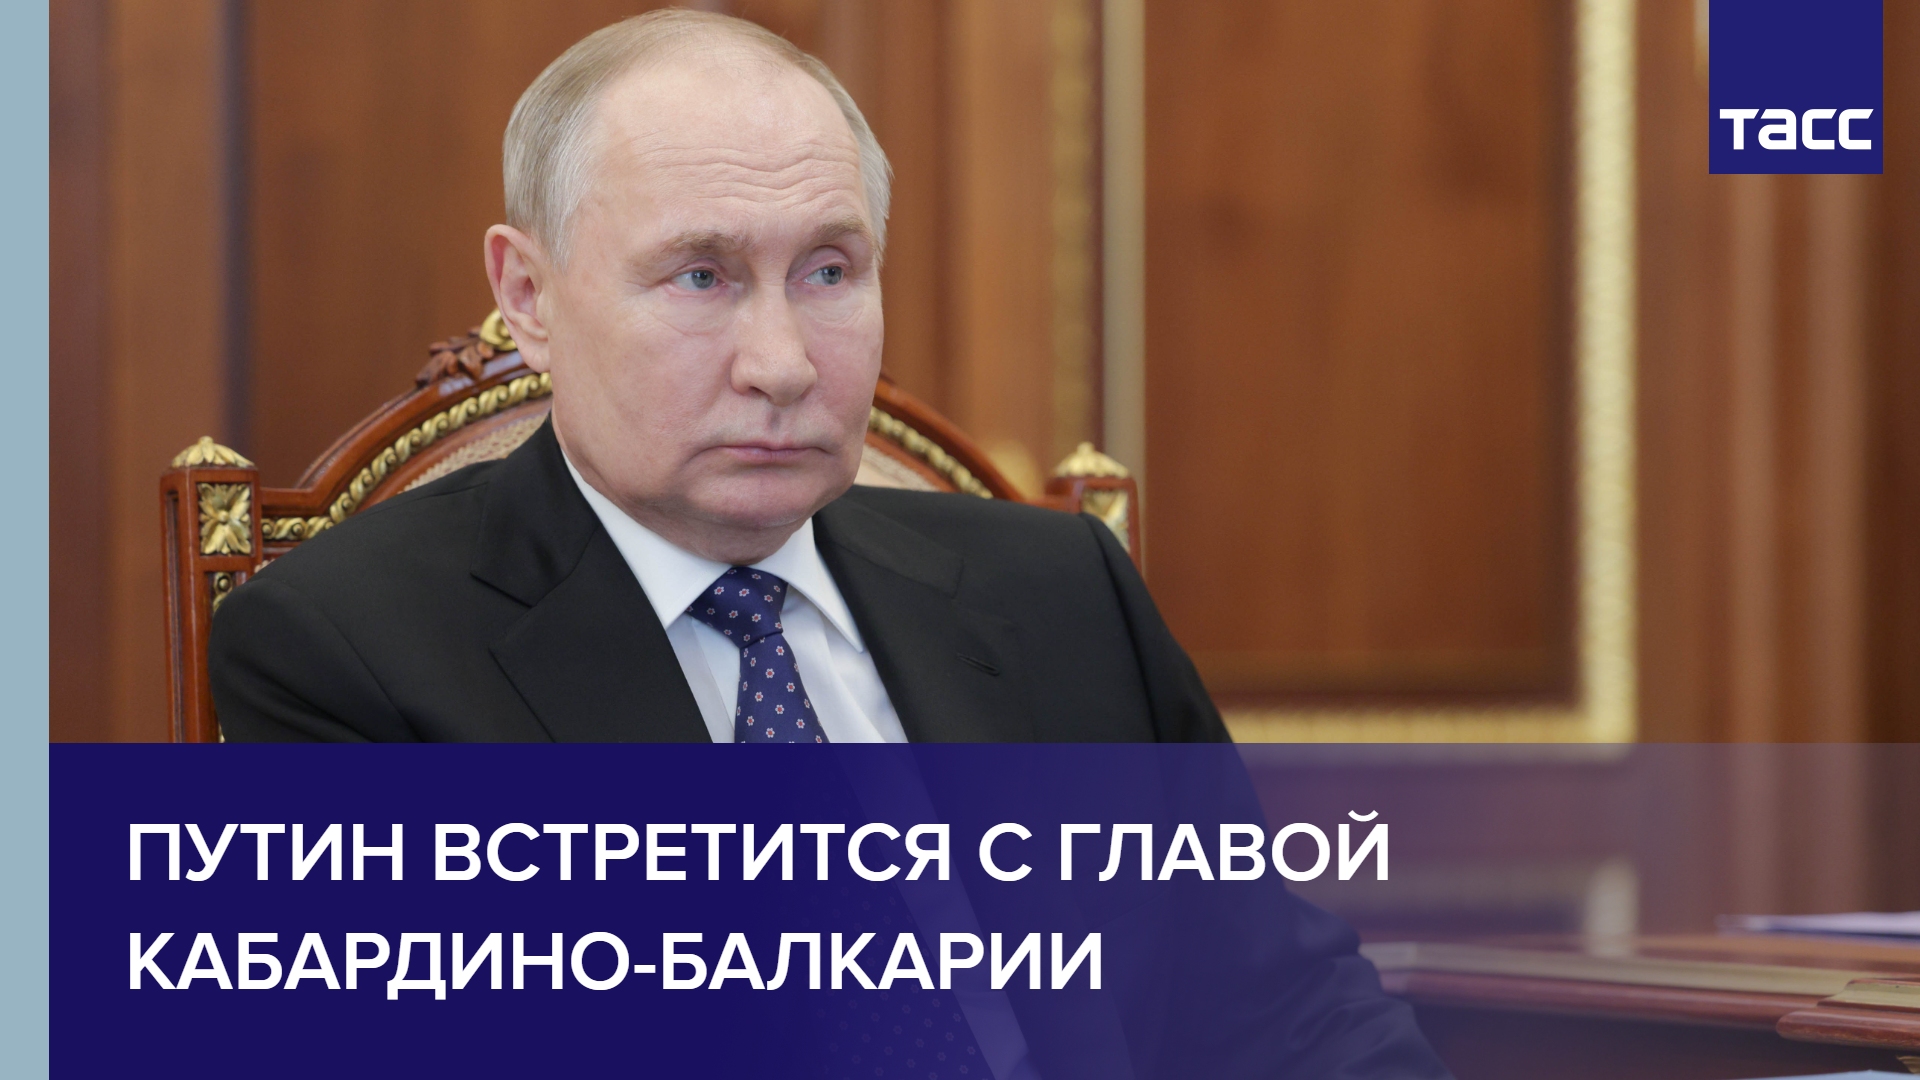 Владимир Путин встретился с главой Кабардино-Балкарии Казбеком Коковым